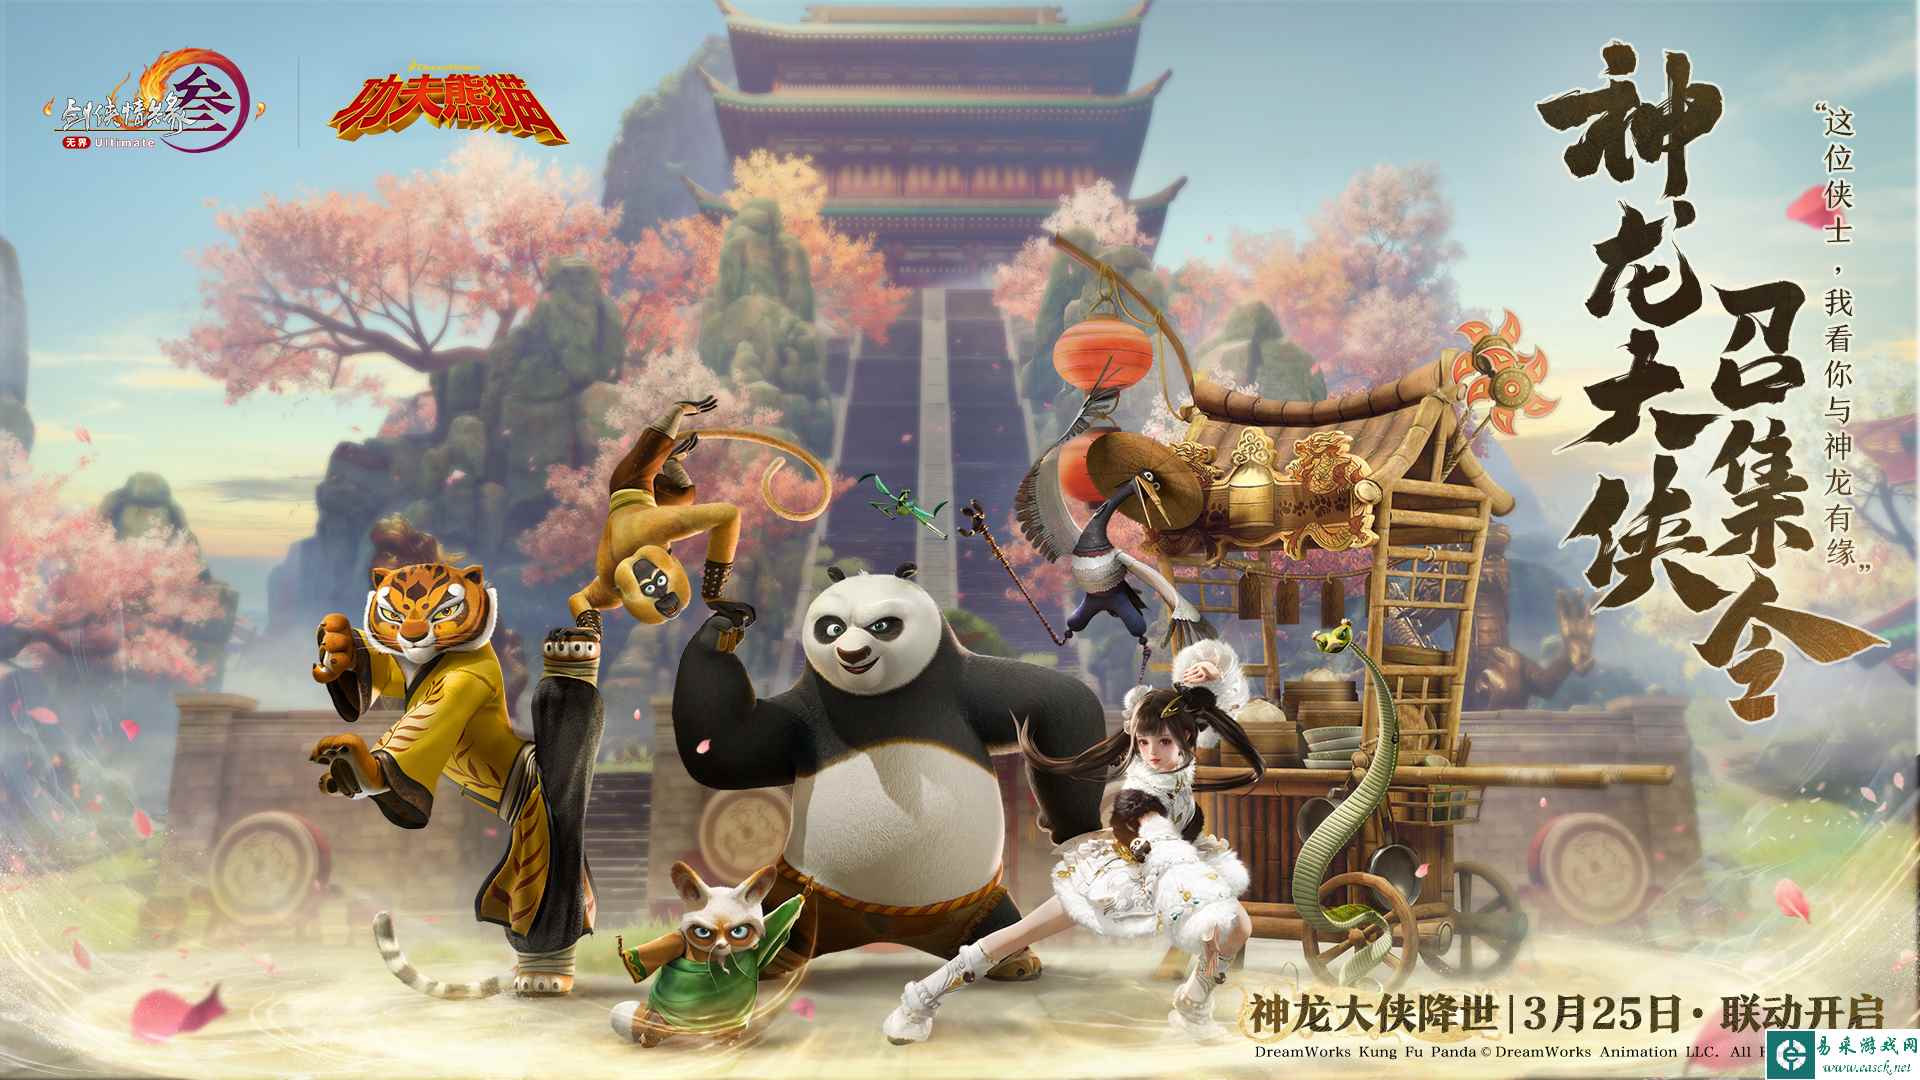 《剑网3》官宣联动《功夫熊猫》 神龙大侠主题礼盒抢先看